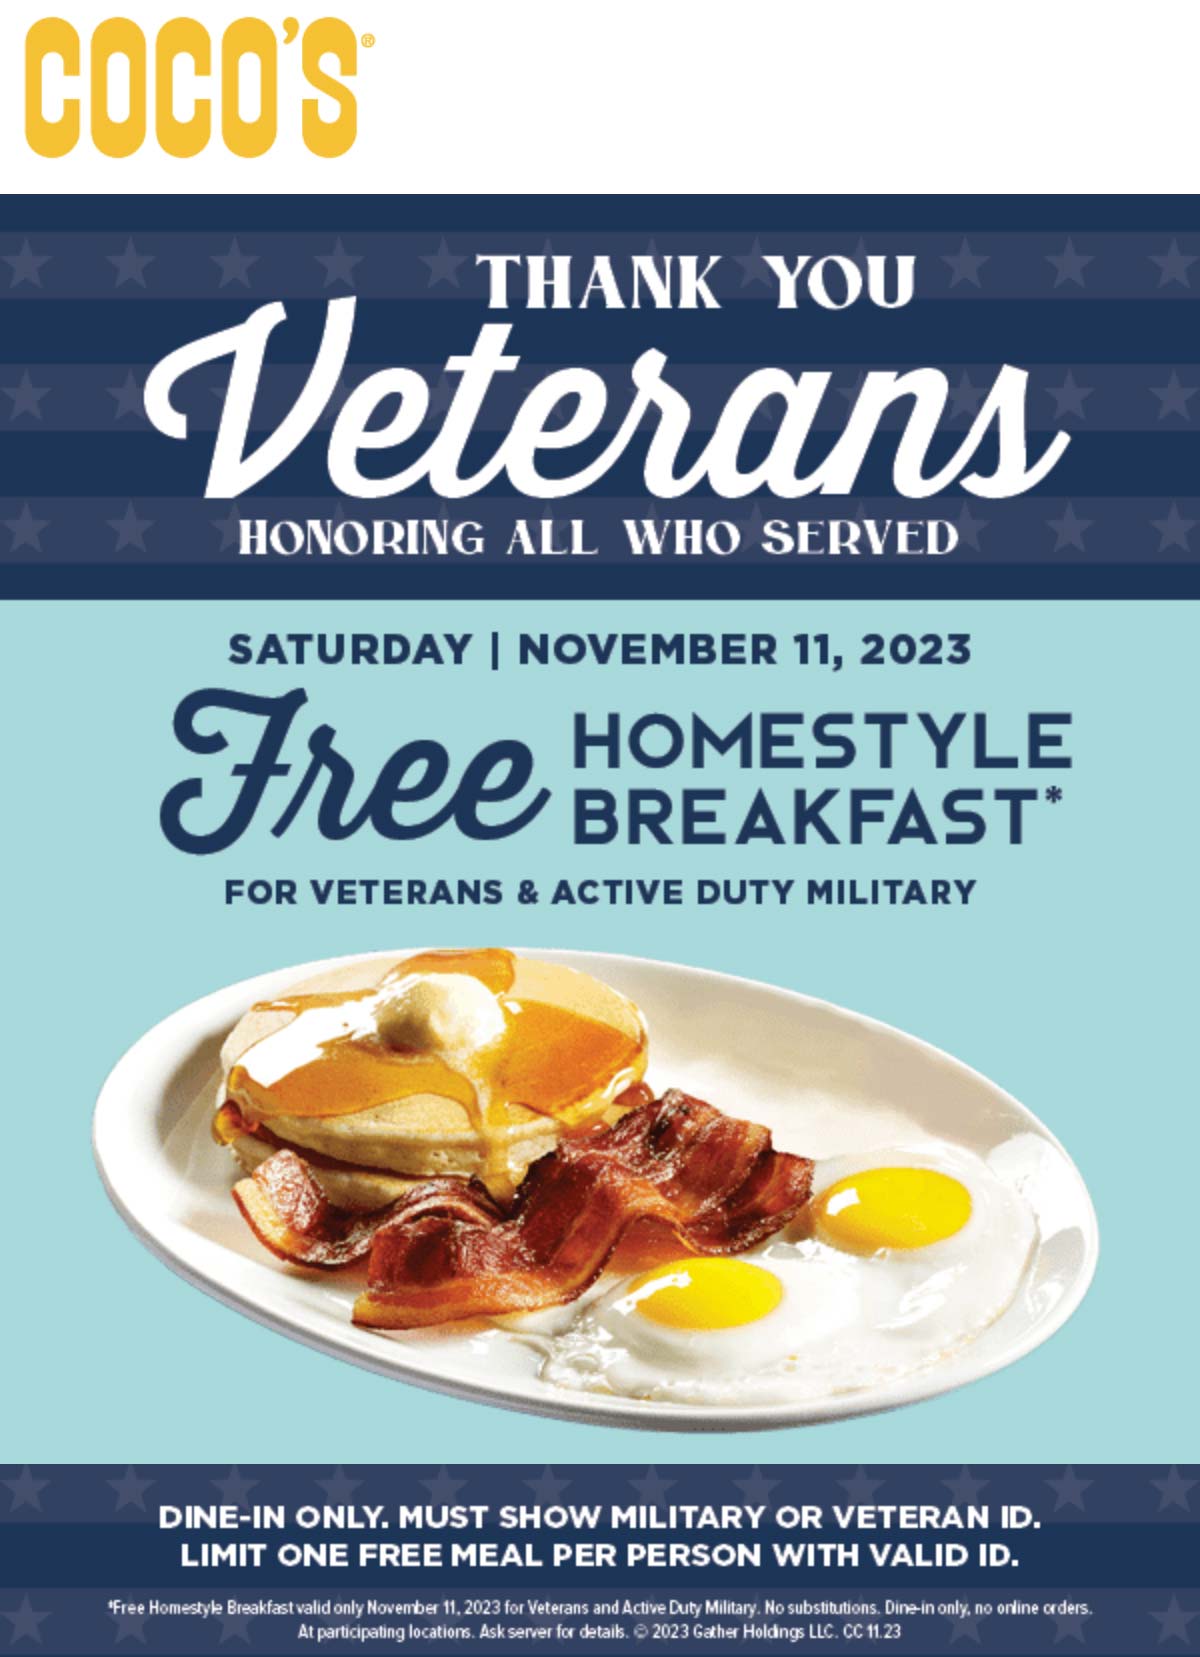 Veterans enjoy a free homestyle breakfast Saturday at Cocos #cocos